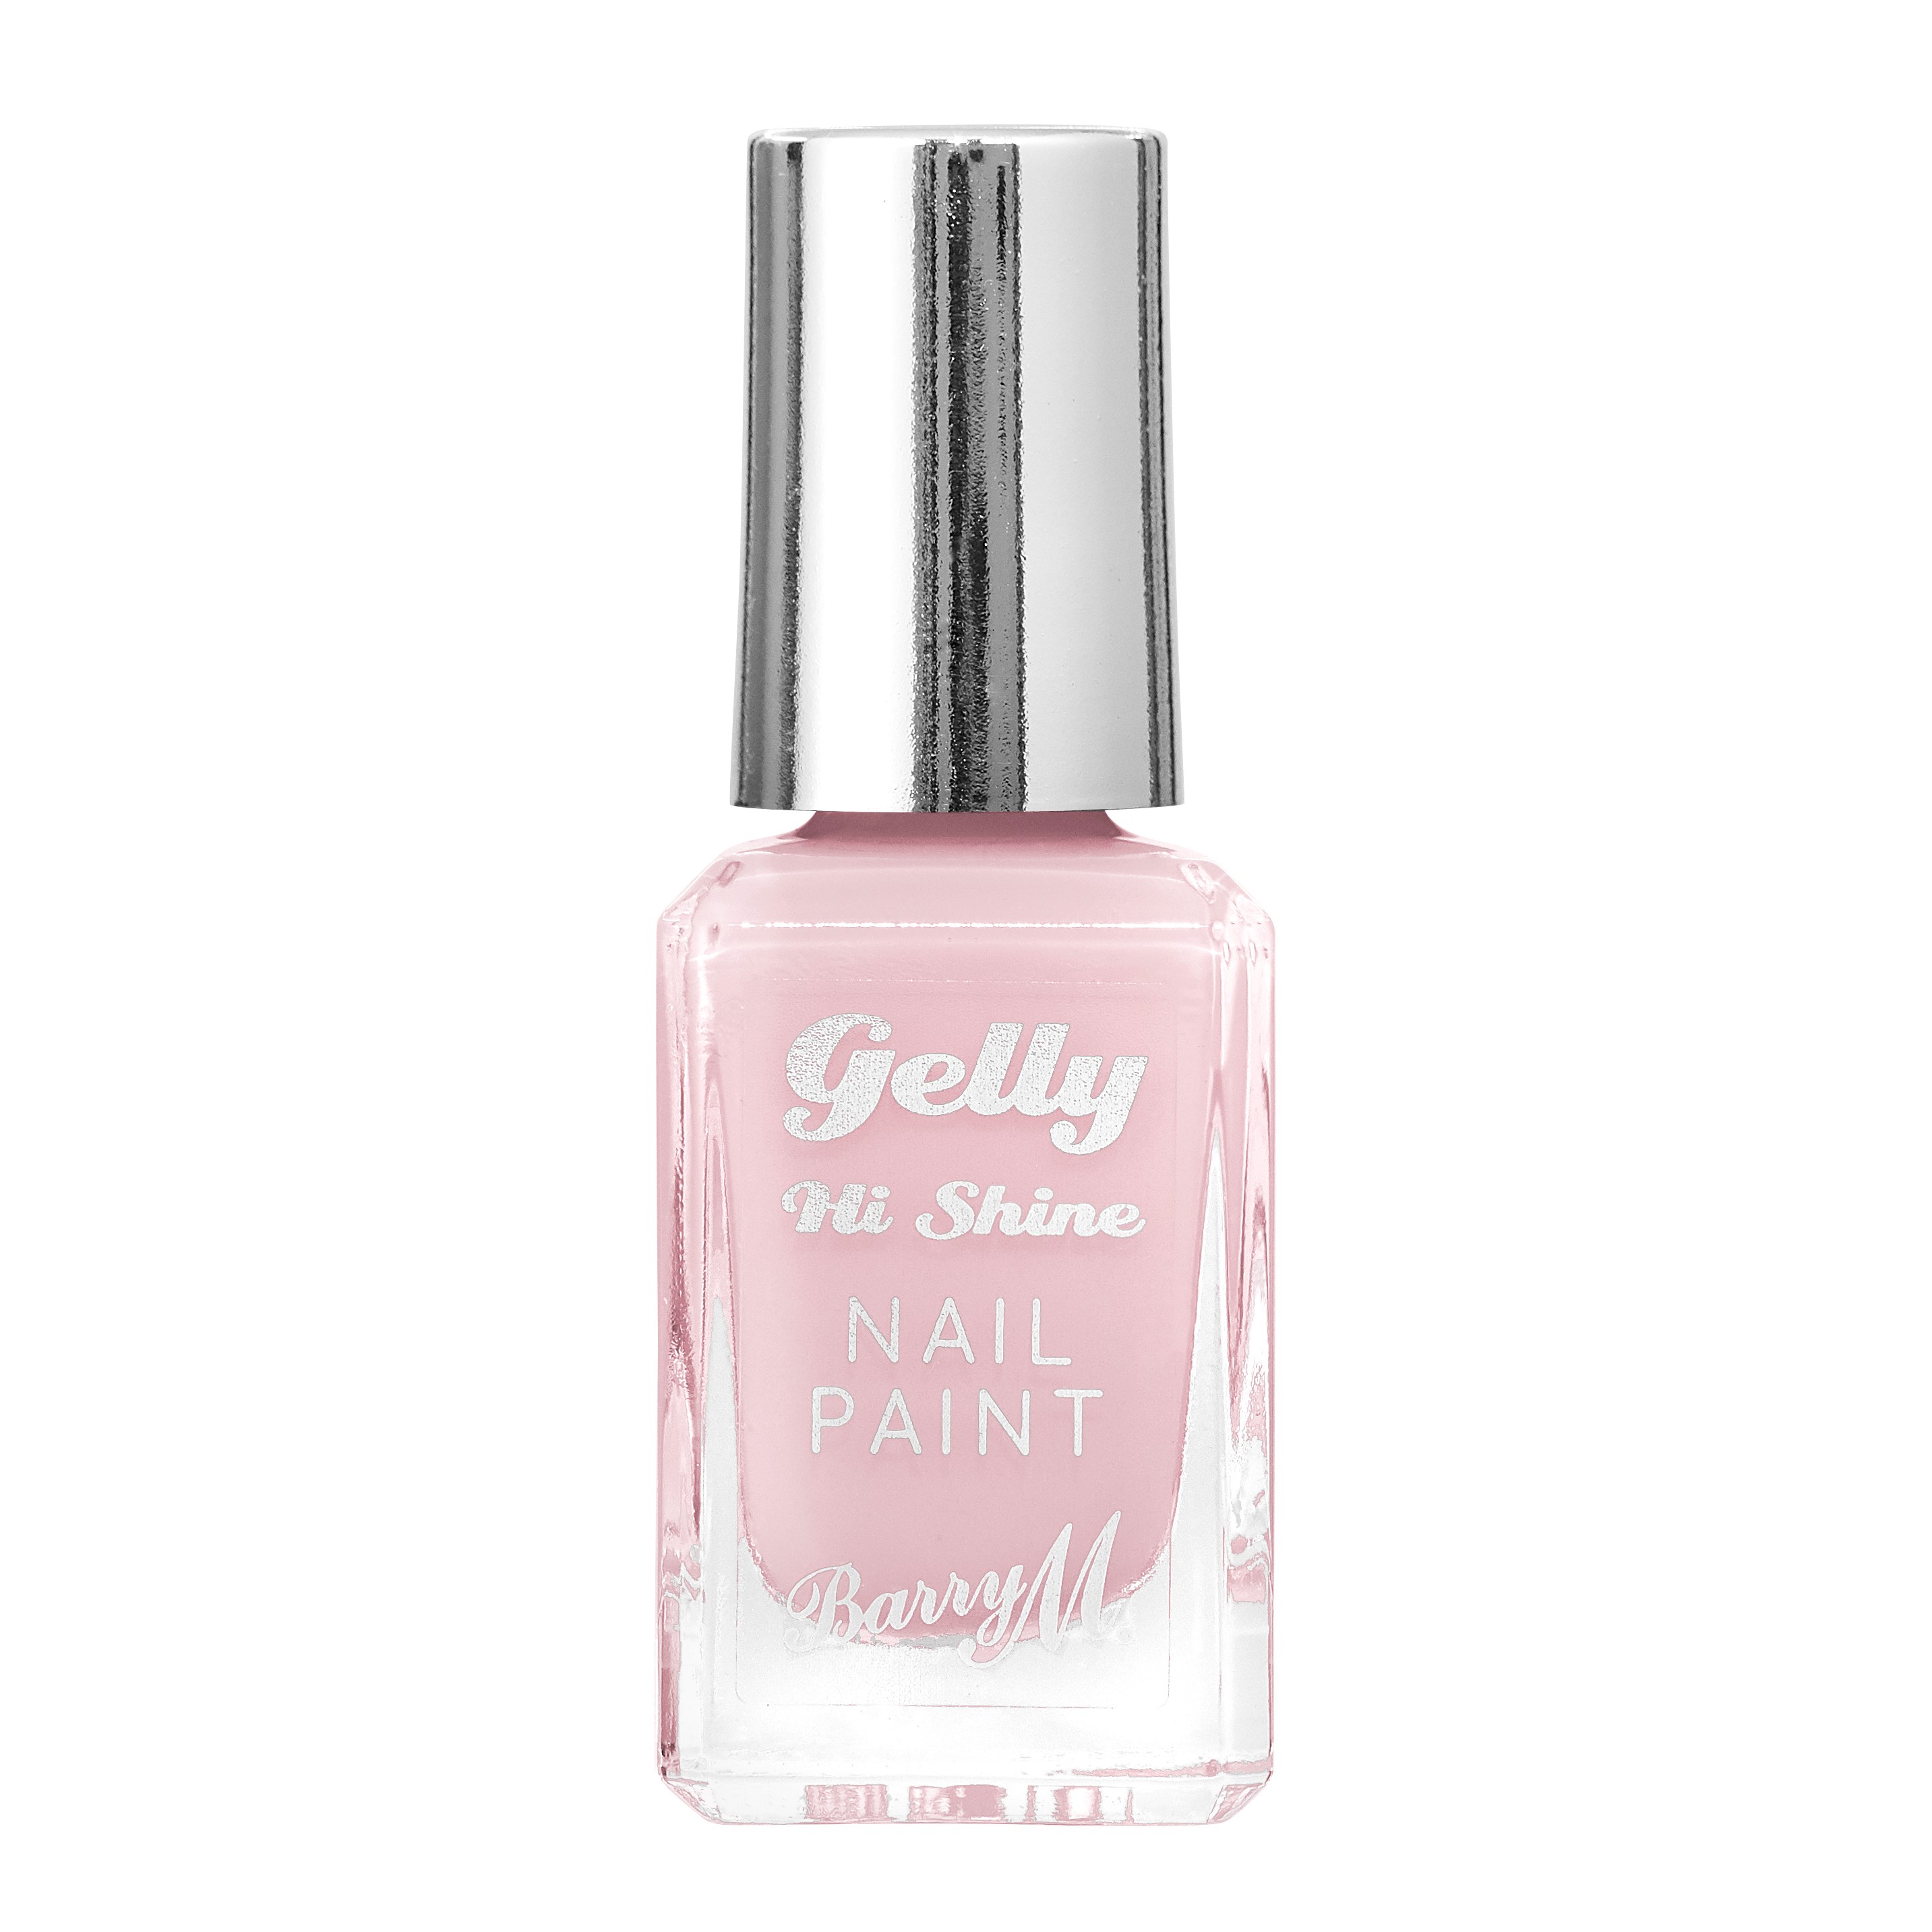 Läs mer om Barry M Gelly Nail Paint Candy Floss